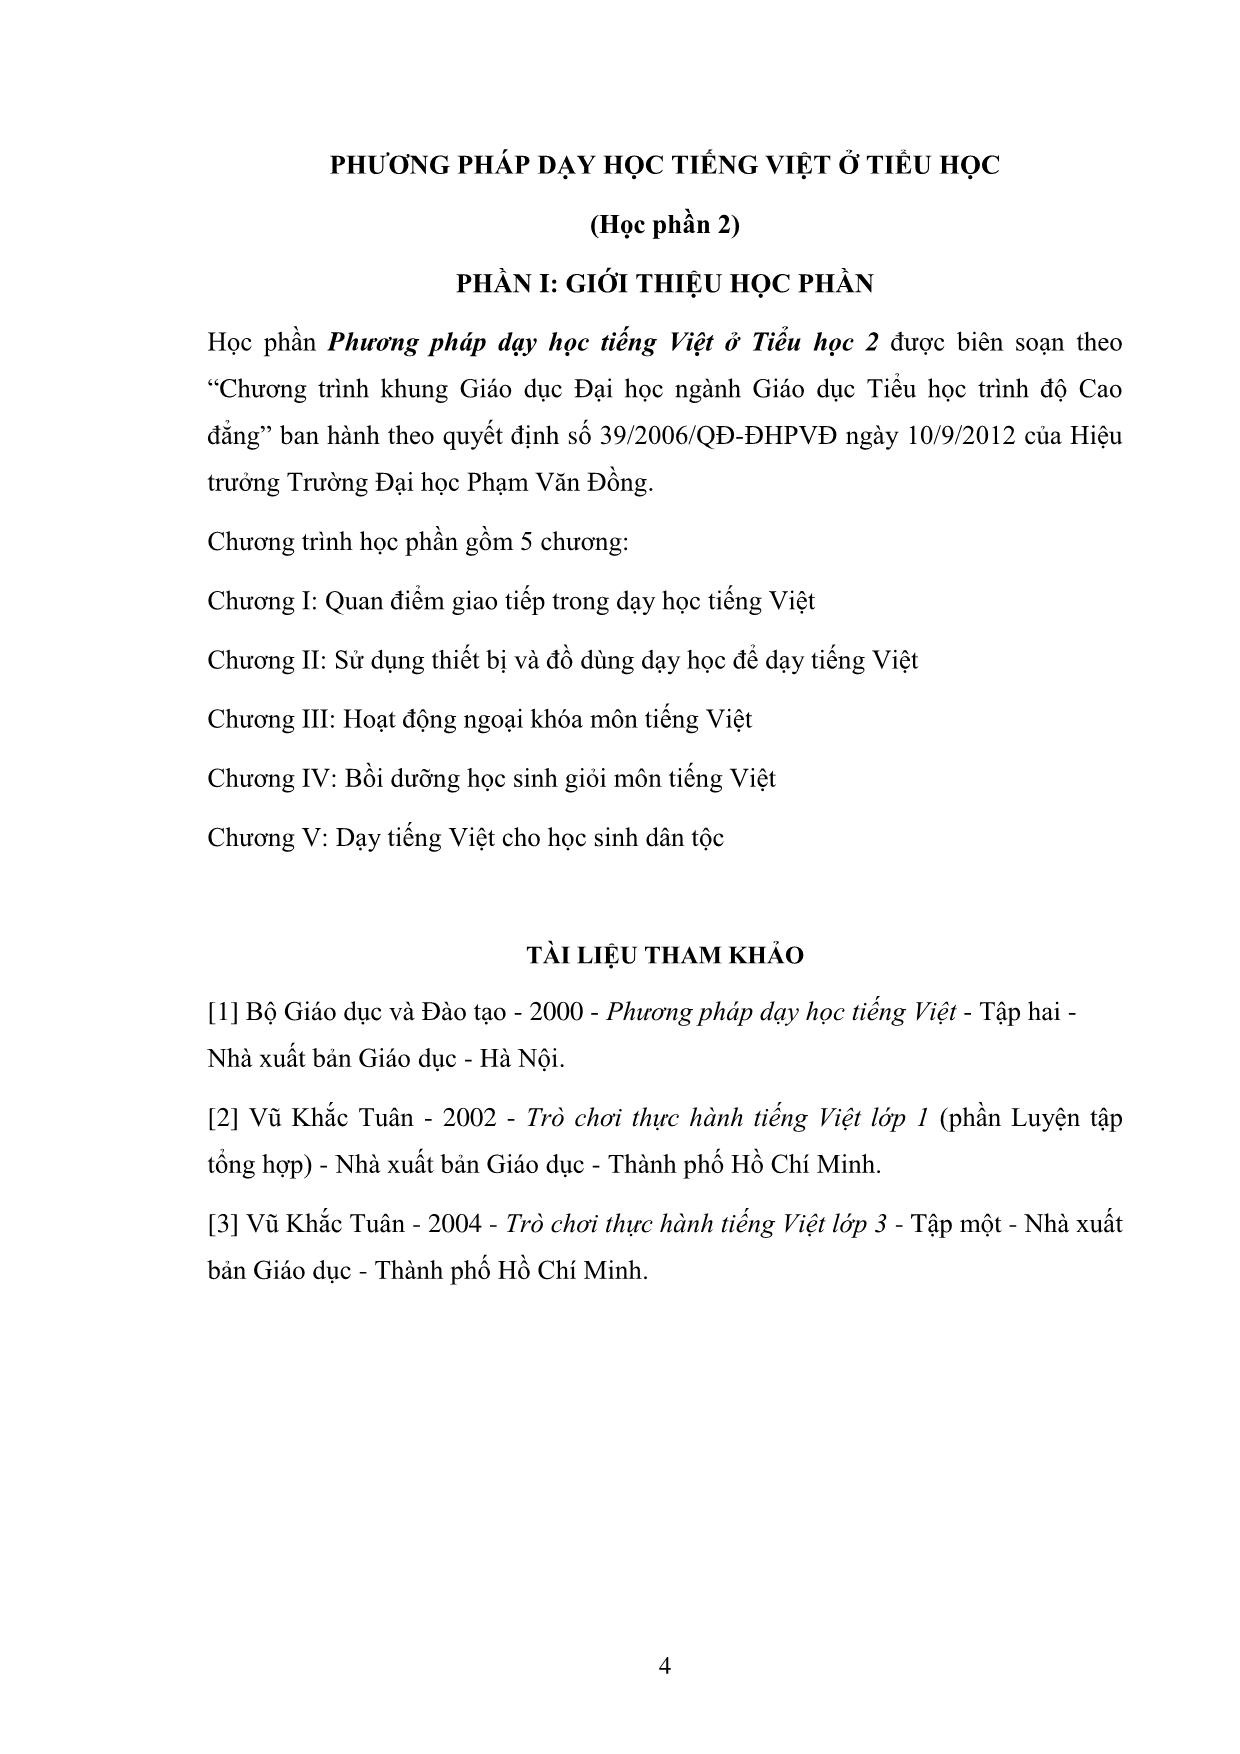 Giáo trình Phương pháp dạy học Tiếng Việt ở Tiểu học (Phần 2) trang 4